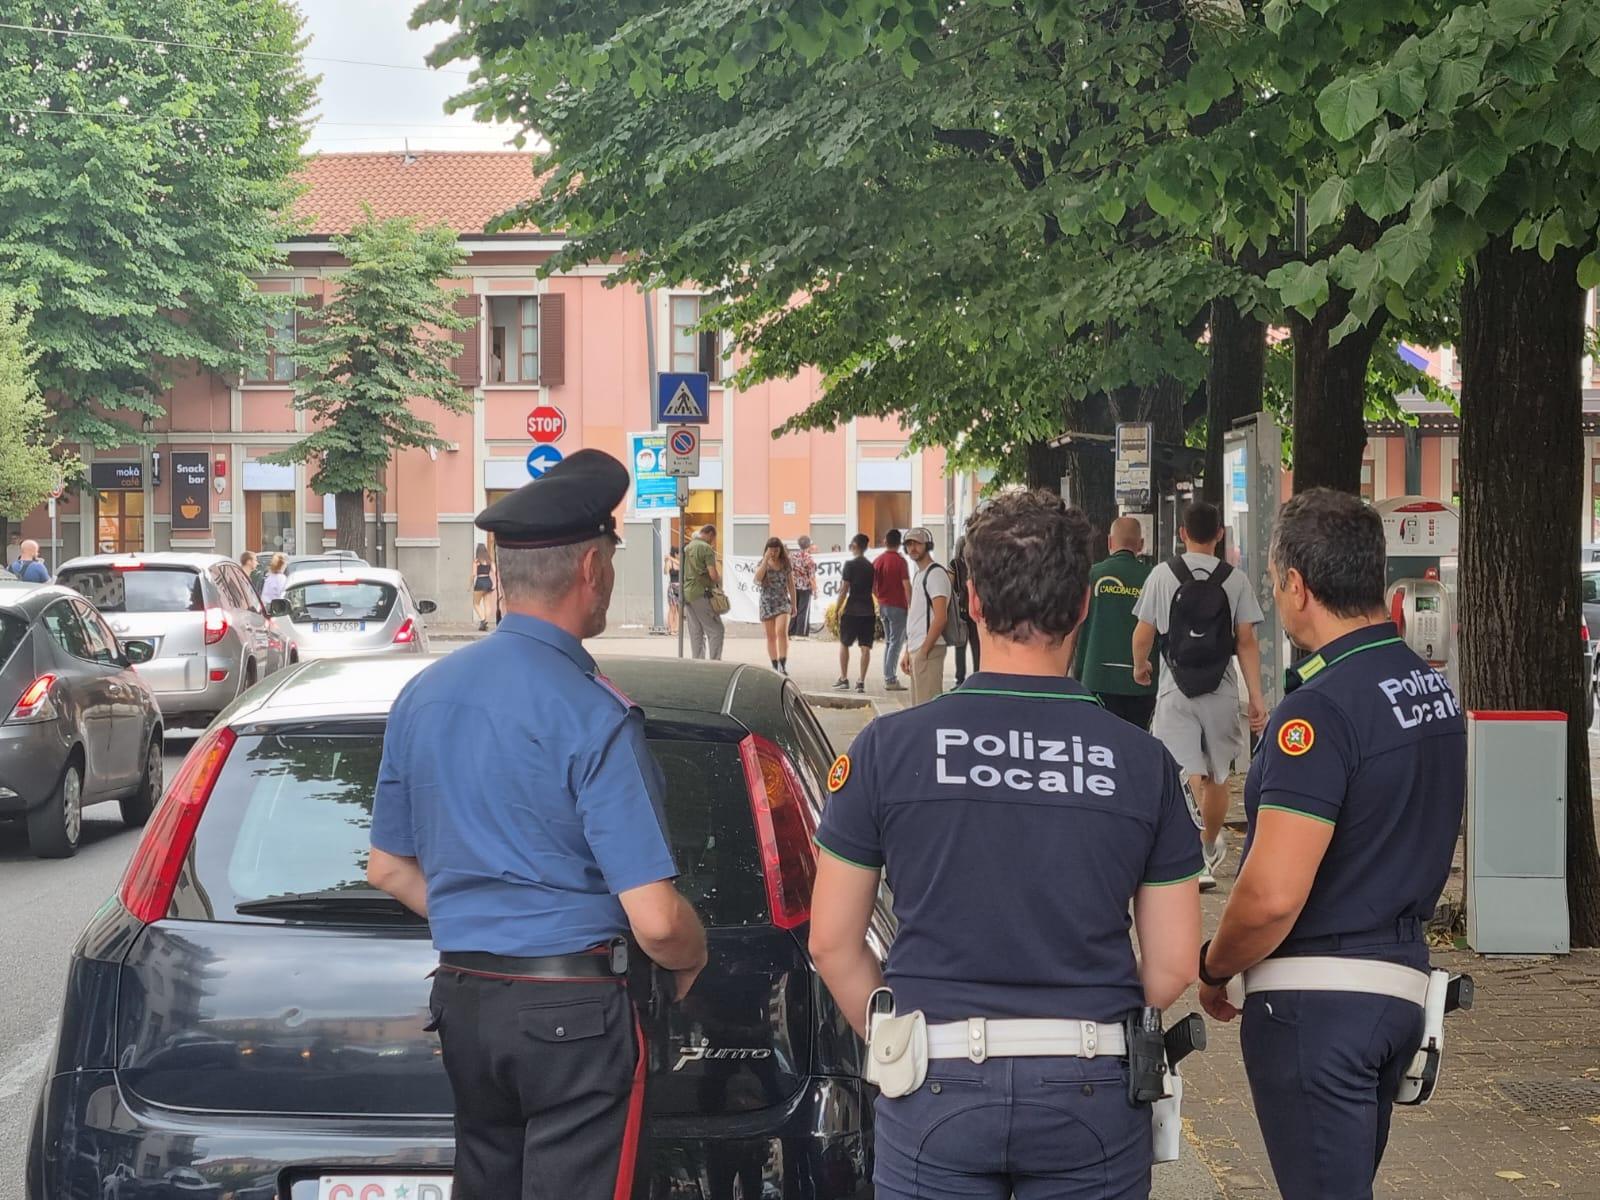 Ieri su ilS: 72enne di Turate muore in vacanza a Rimini, gli sfilano l’orologio chiedendo informazioni, premiati gli studenti dal Rotary